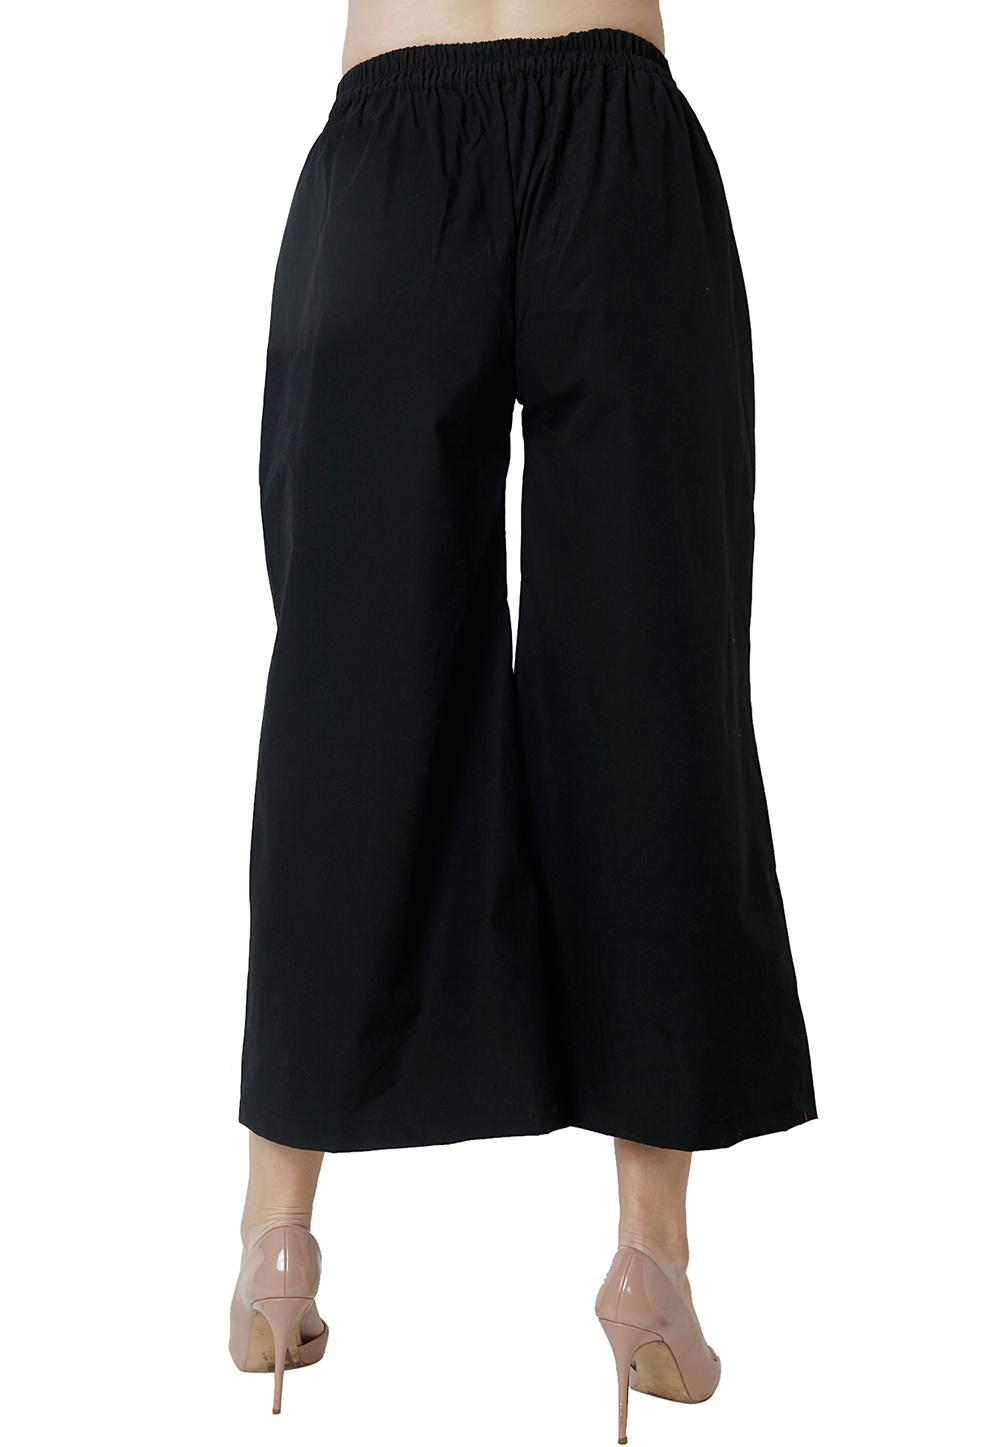 Black Palazzo Pants Women Wide Leg Bohemian Cotton Trousers - Etsy